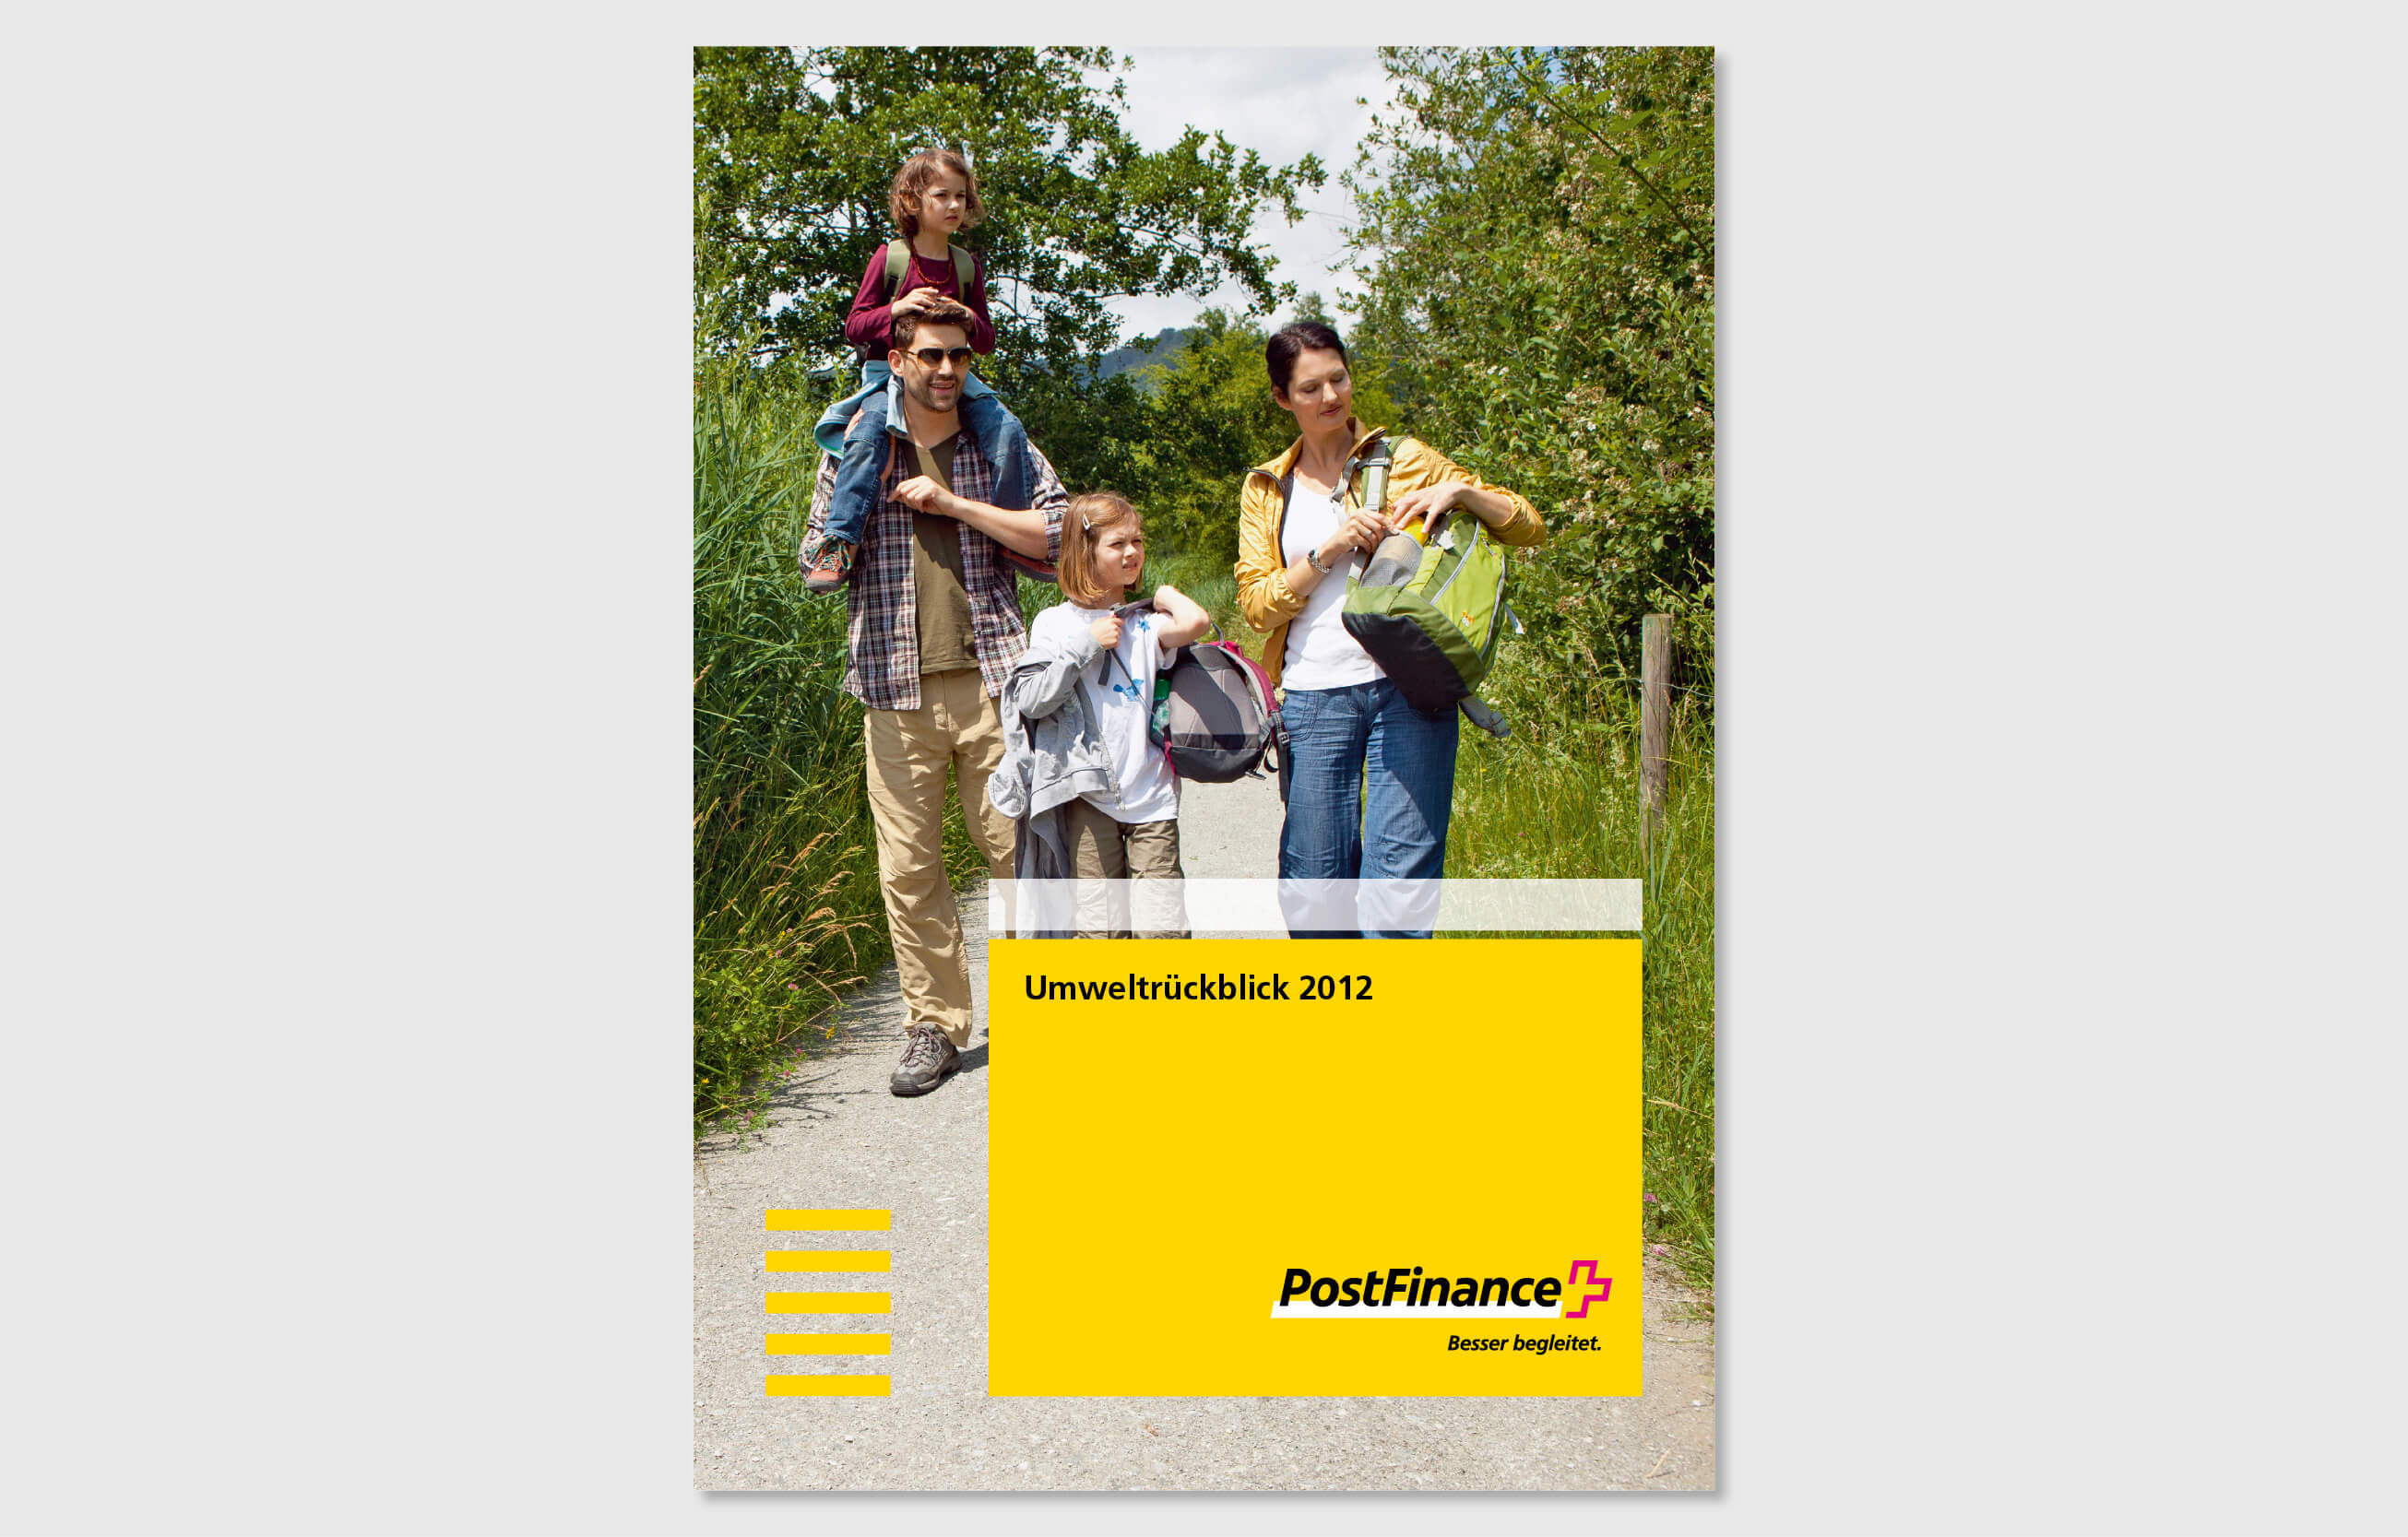 consign entwickelt Karten und Broschüren für die PostFinance AG